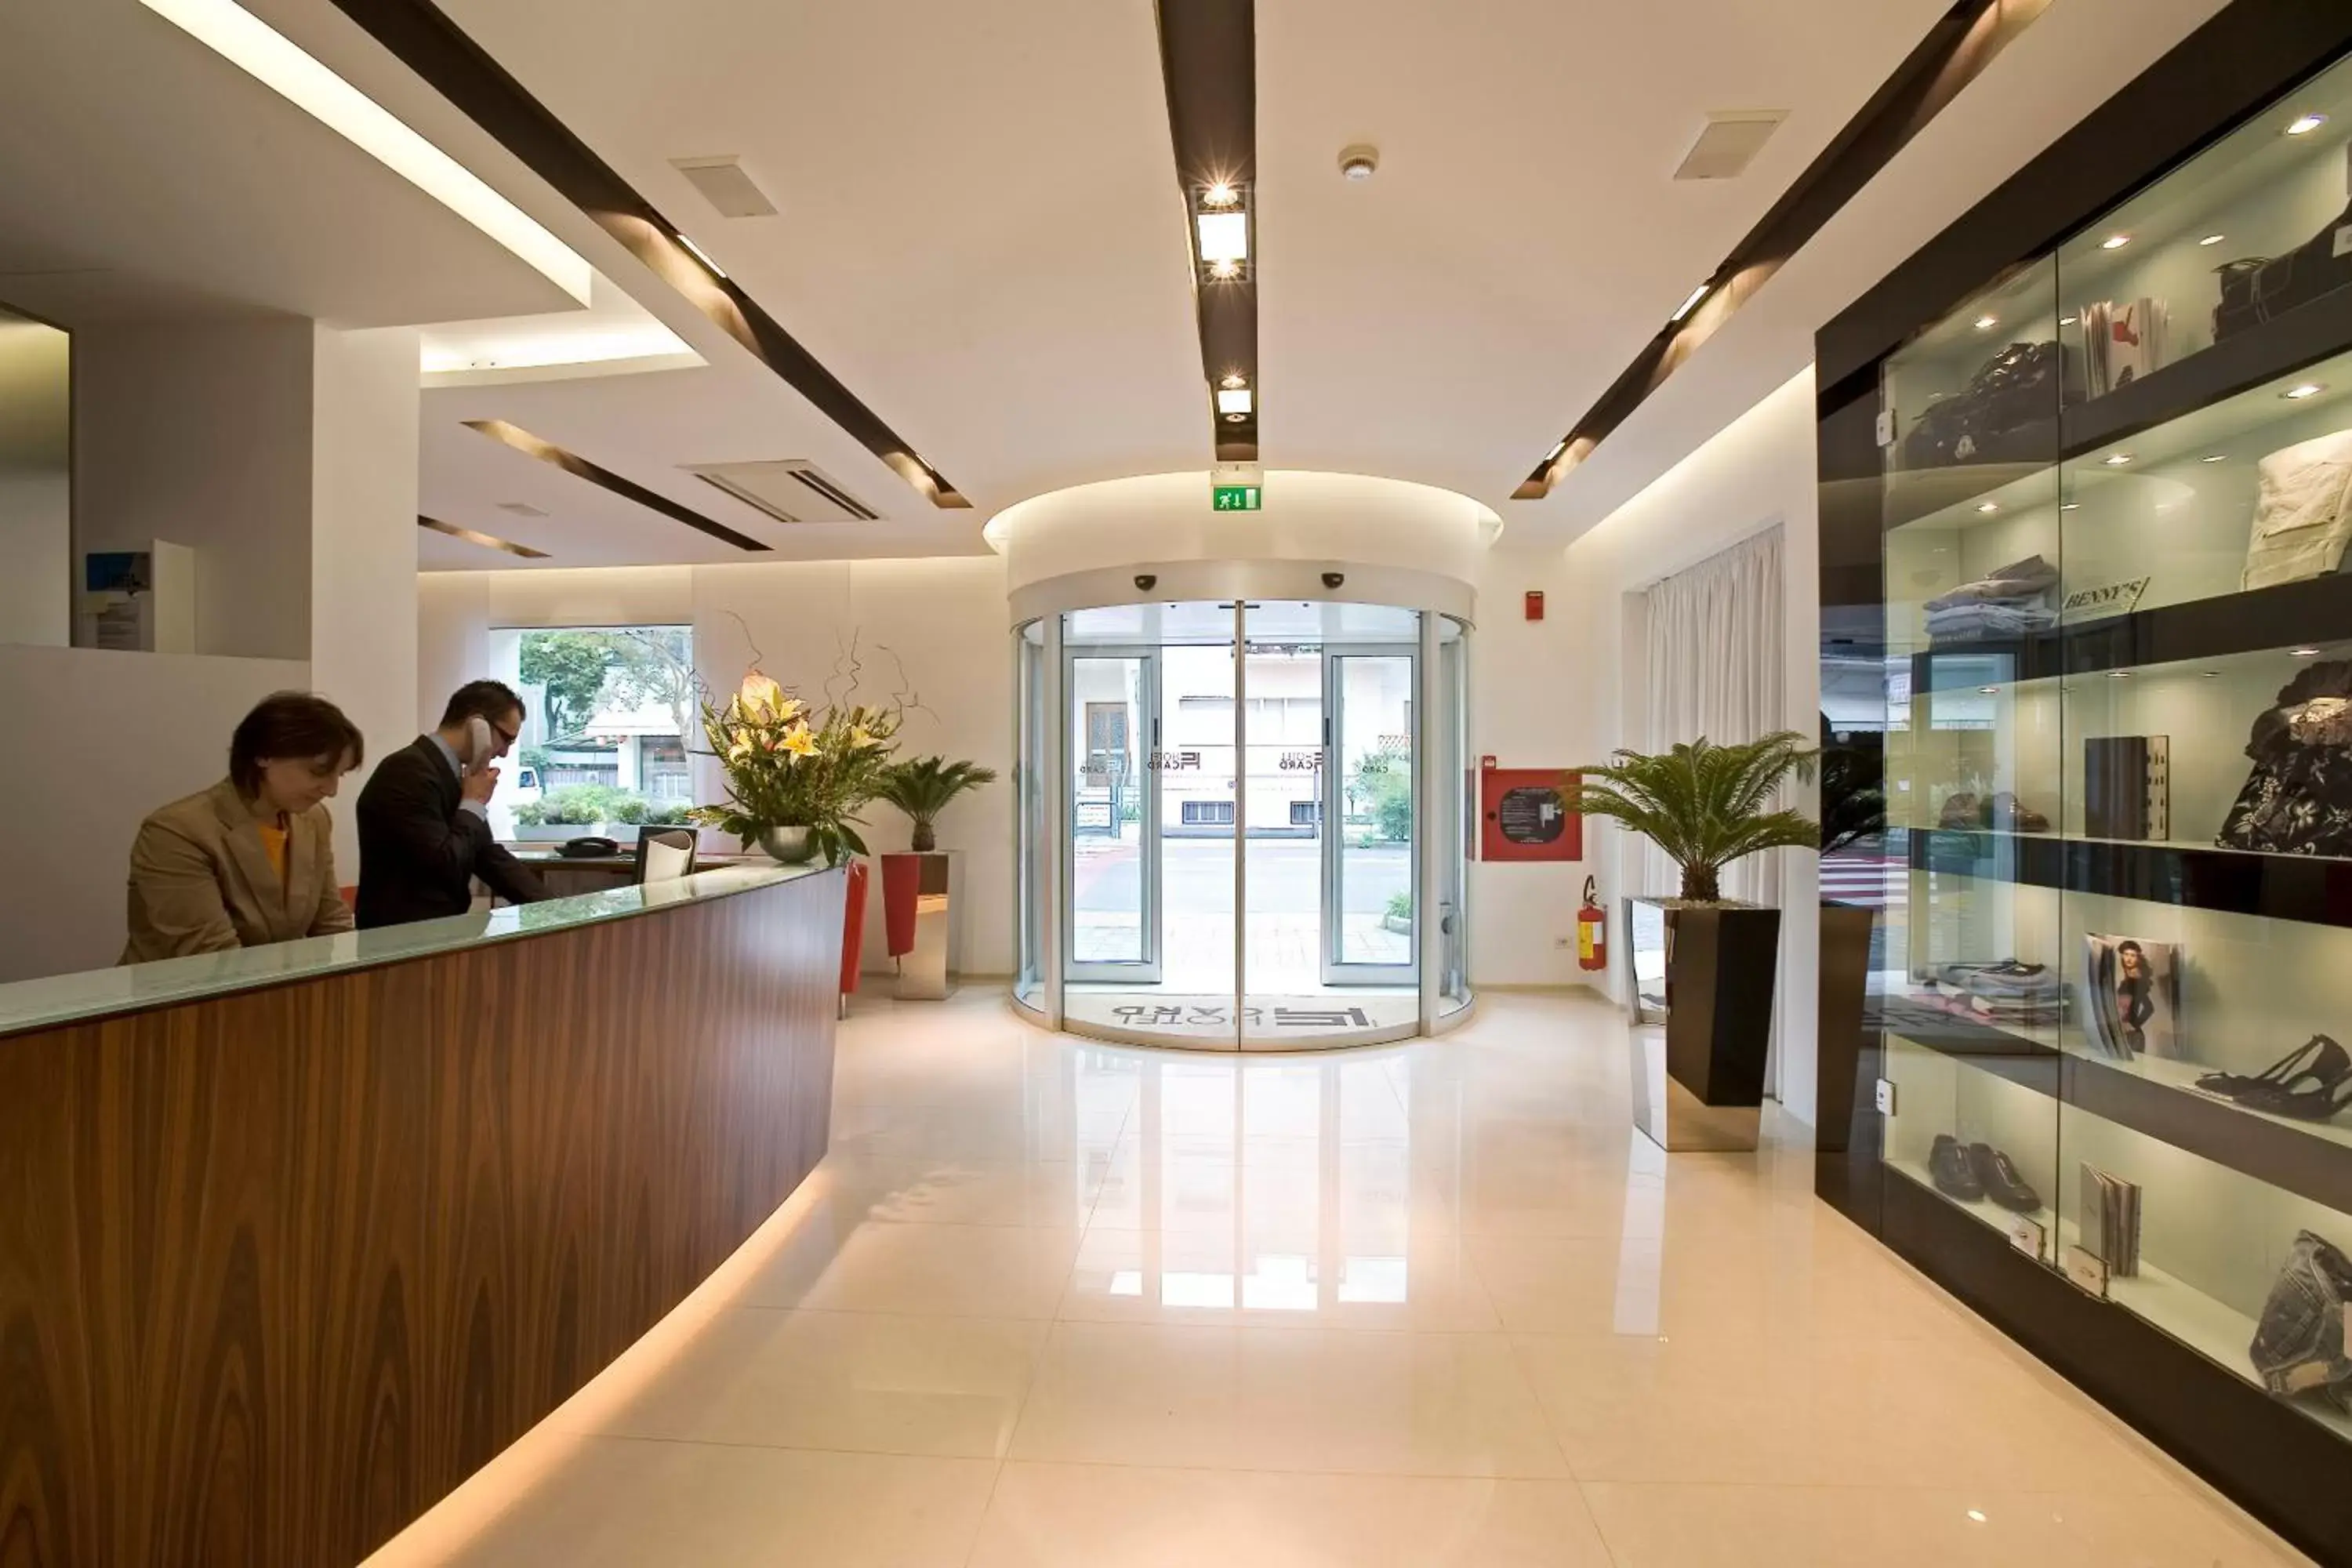 Lobby or reception in Card International Hotel